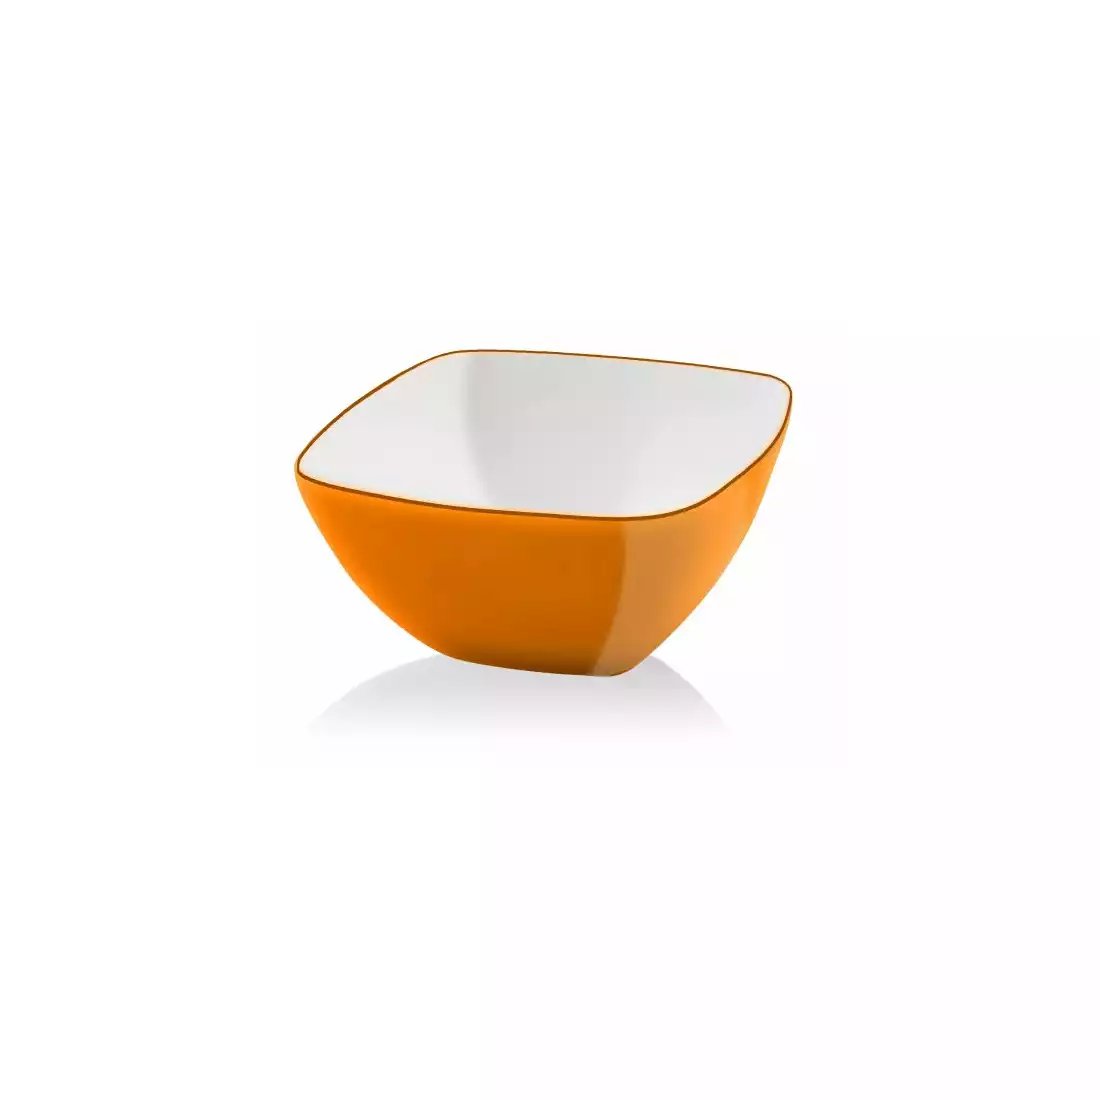 VIALLI DESIGN LIVIO čtvercová akrylová miska, oranžový